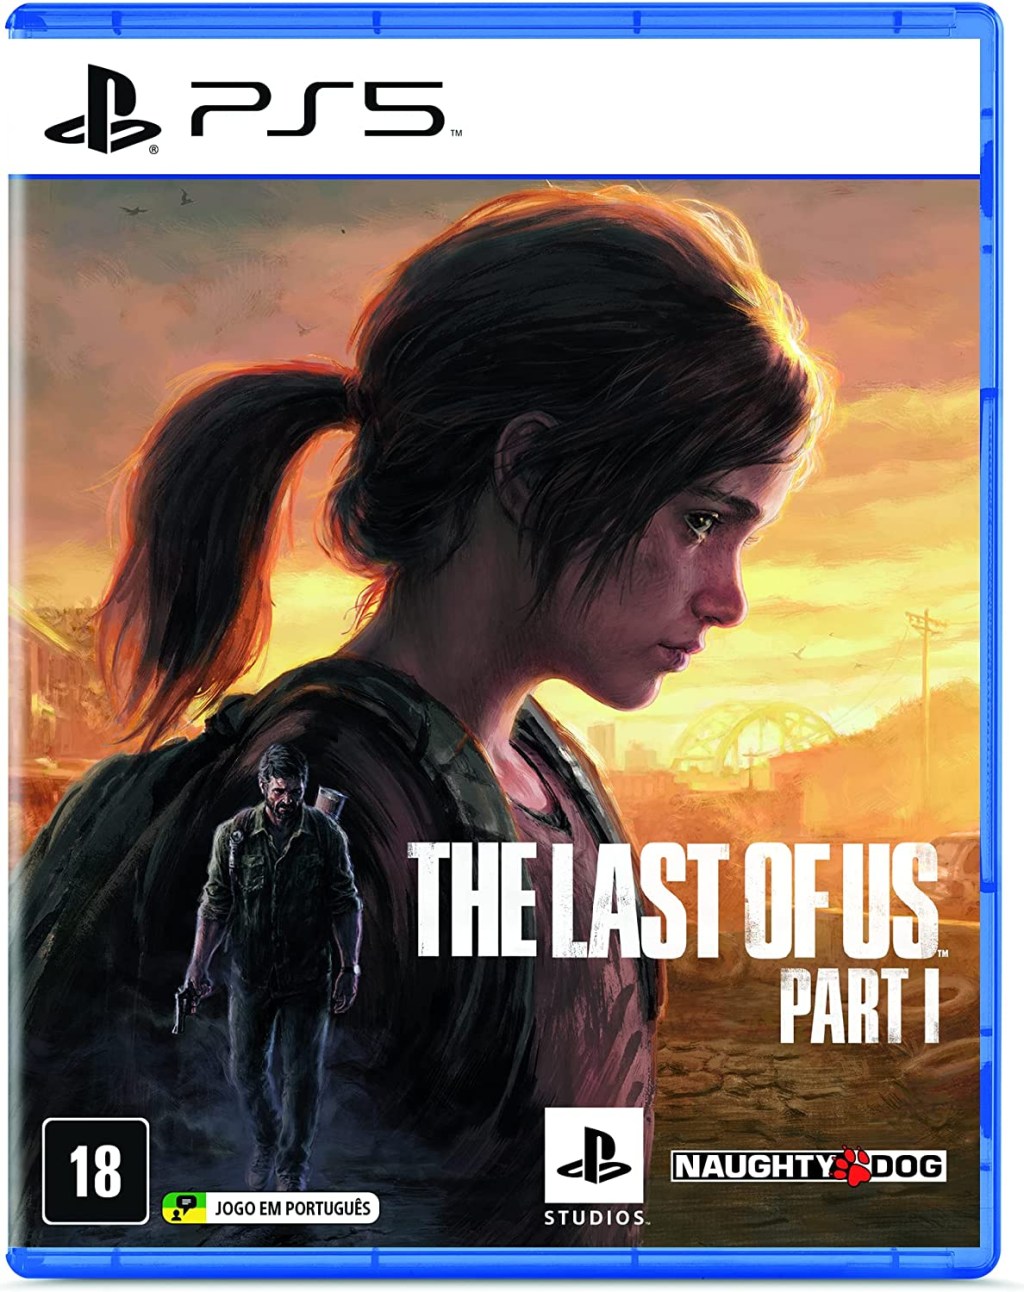 Episódio 4 de The Last of Us: diferenças para o jogo